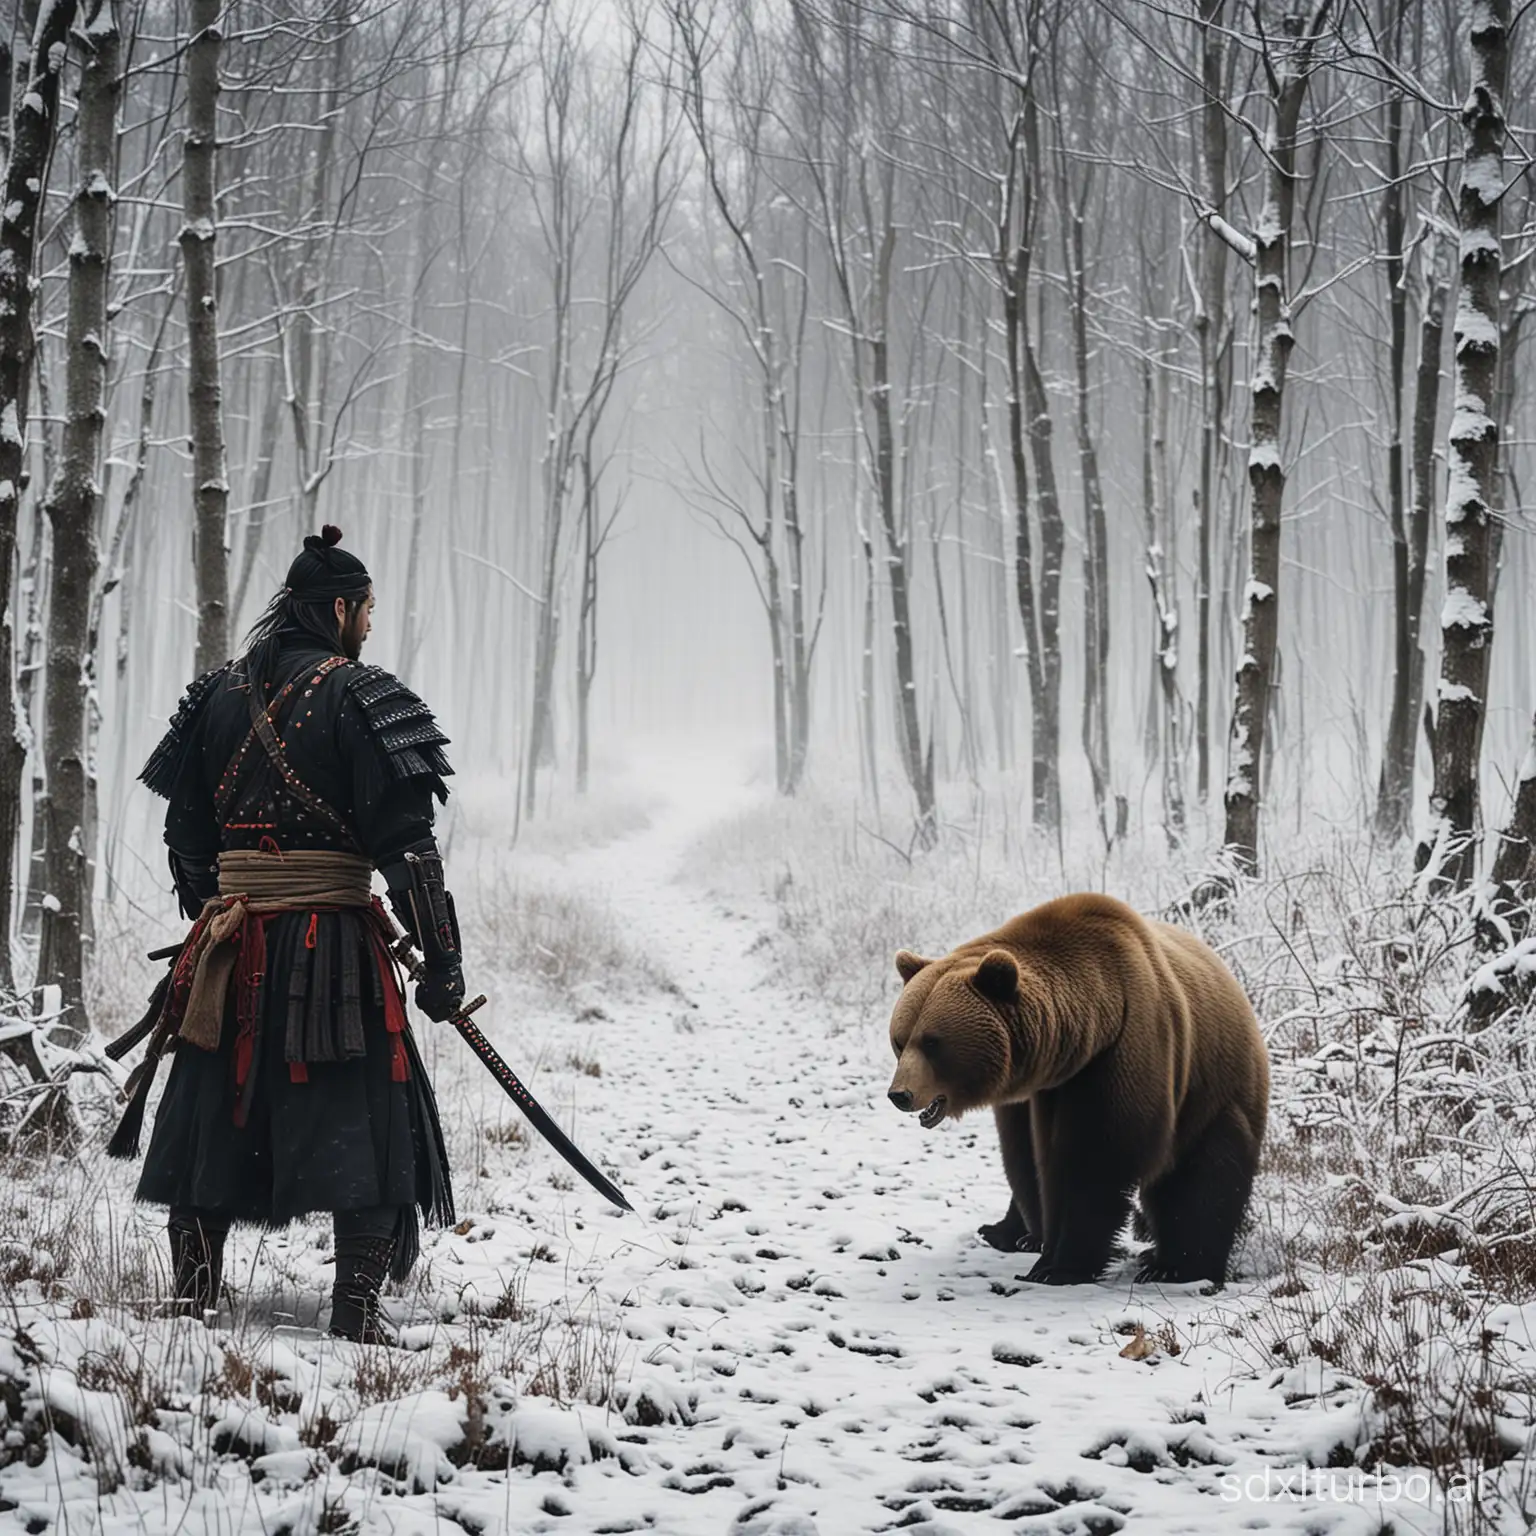 Samurai versus bear winter forest